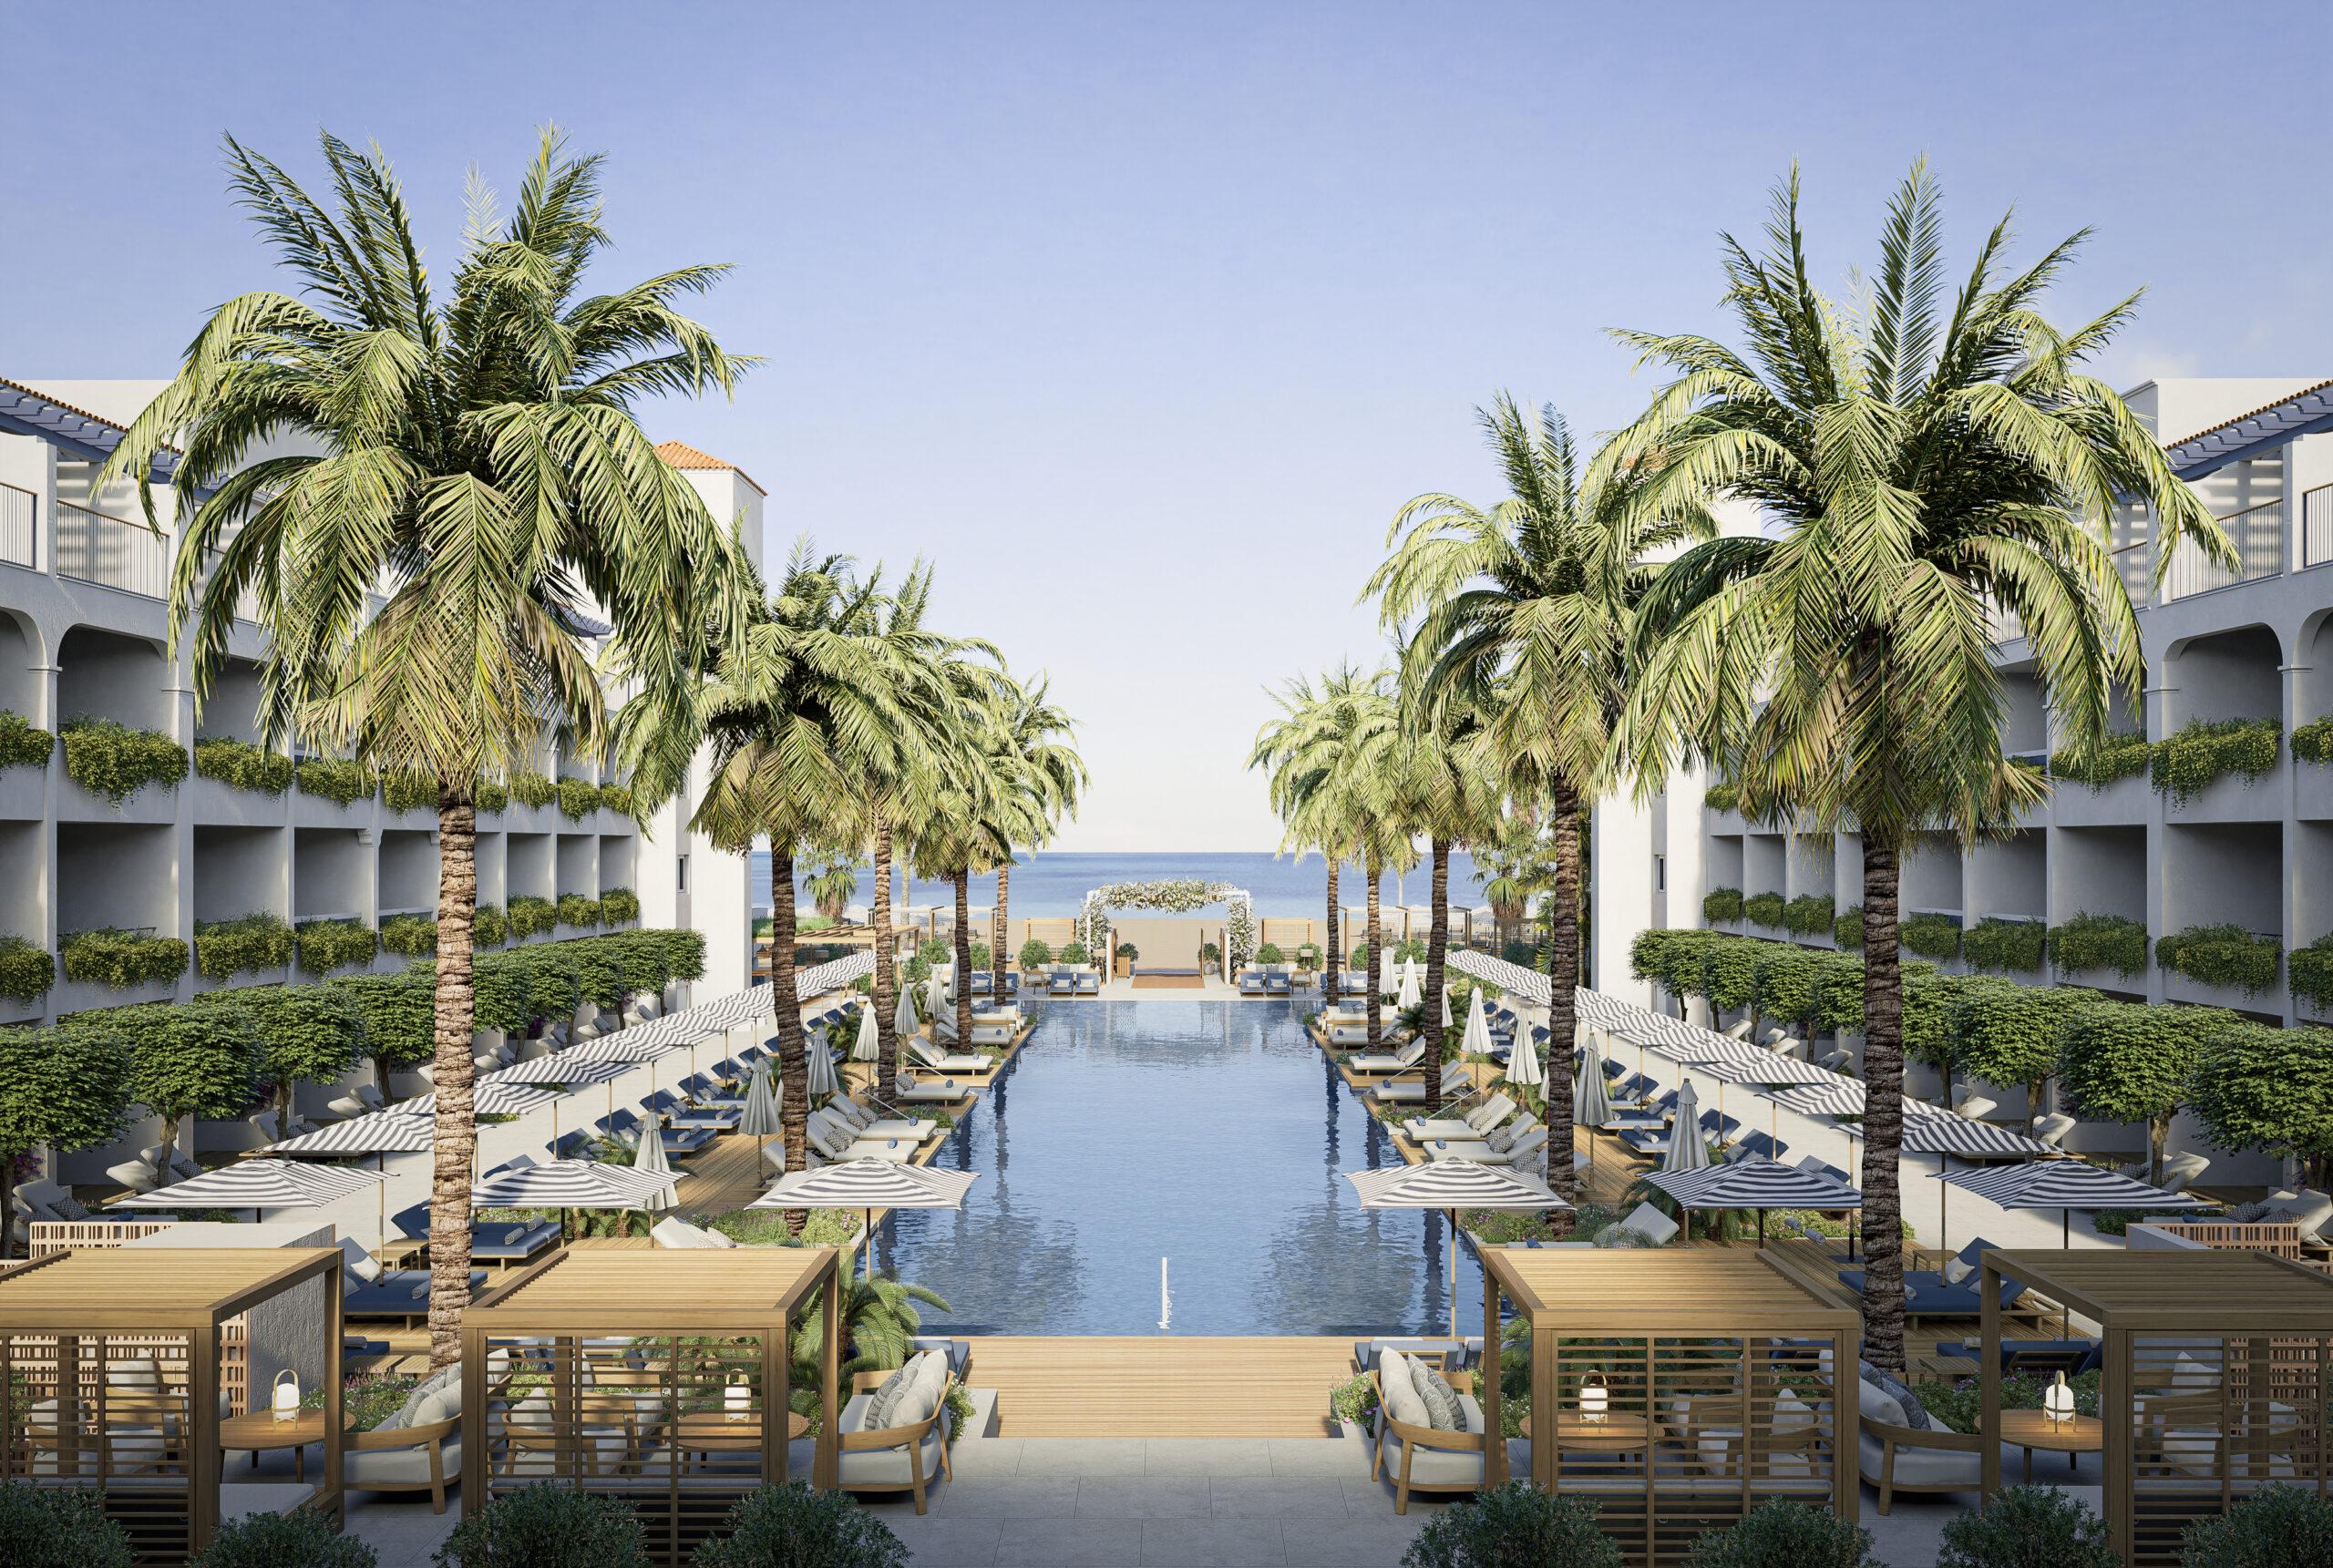 Mett Hotels & Resorts anuncia nueva apertura en el mes de julio de Mett Hotel & Beach Resort Marbella – Estepona